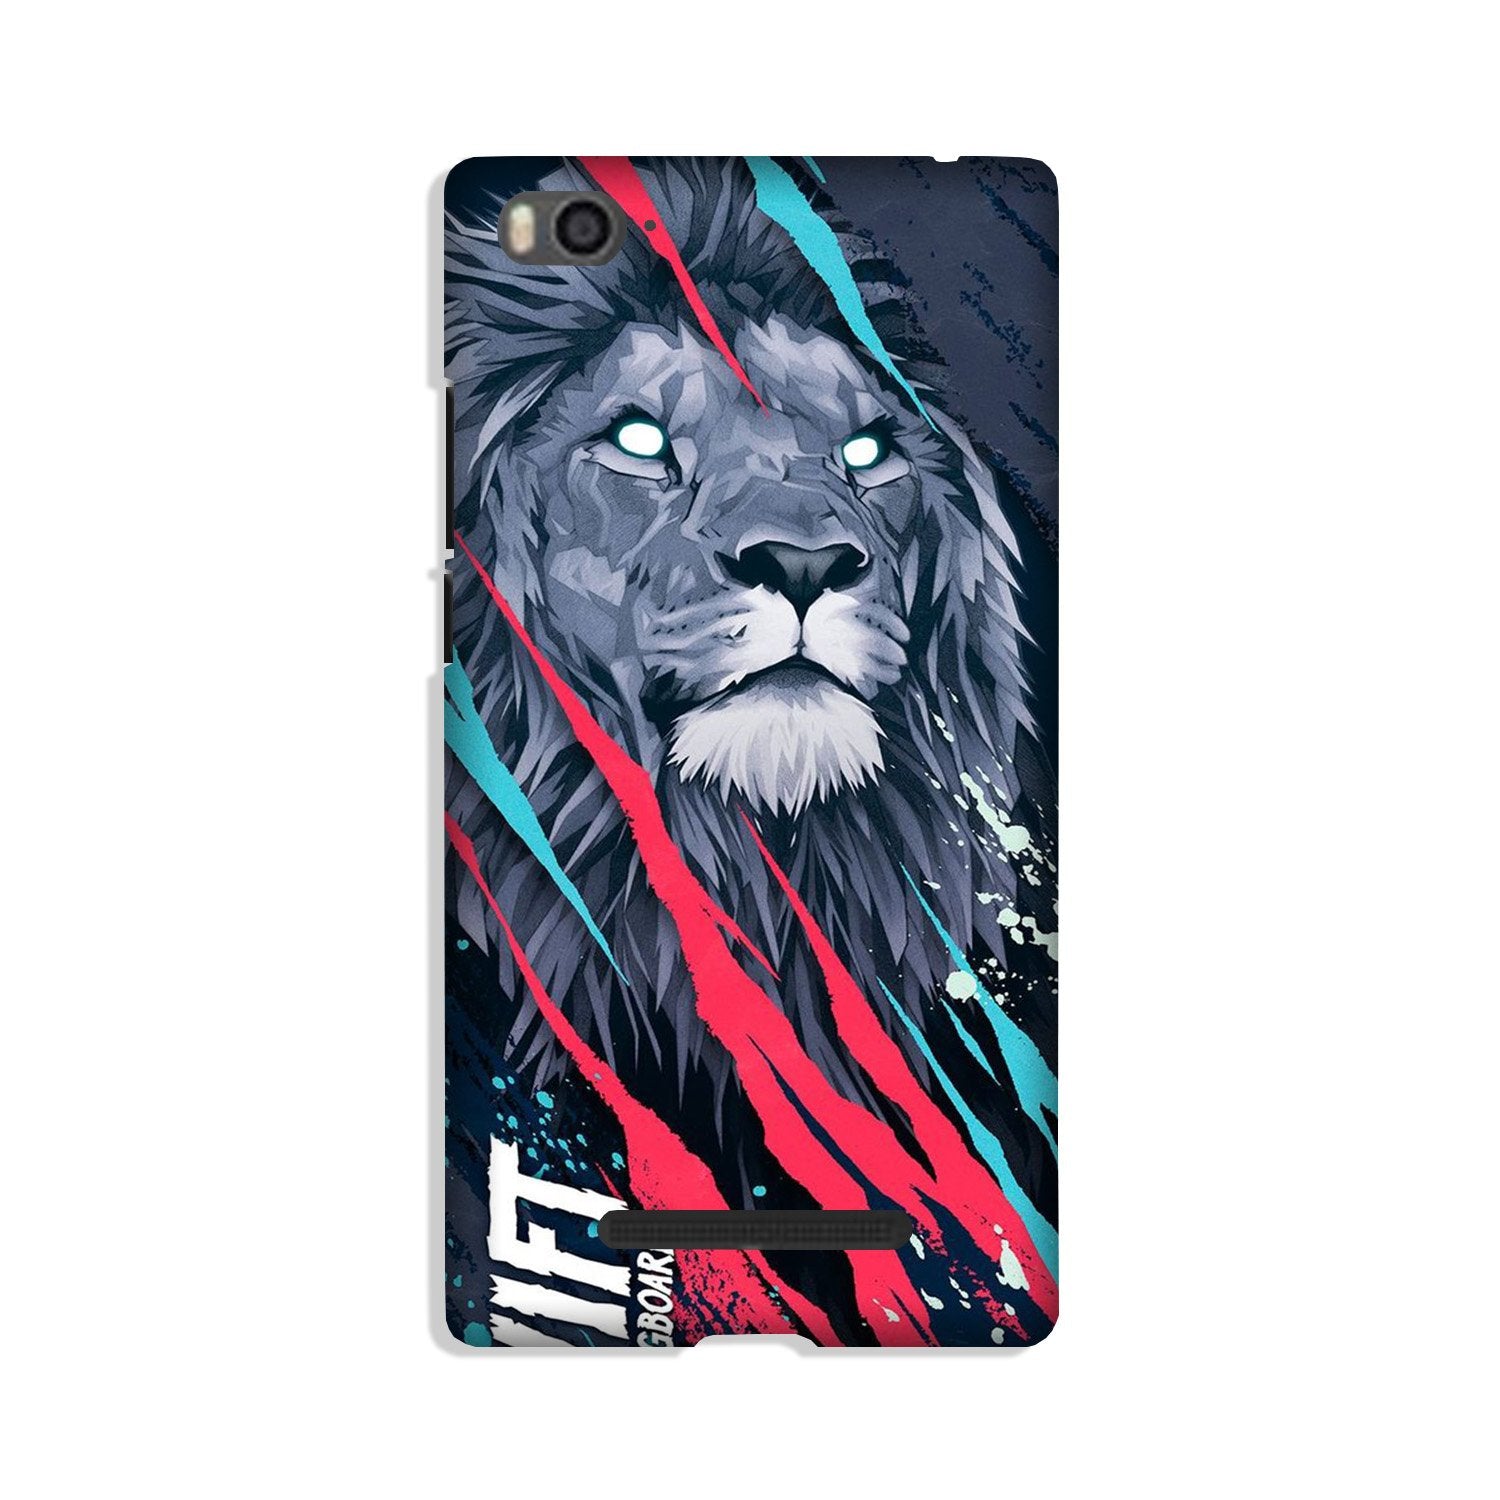 Lion Case for Xiaomi Mi 4i (Design No. 278)